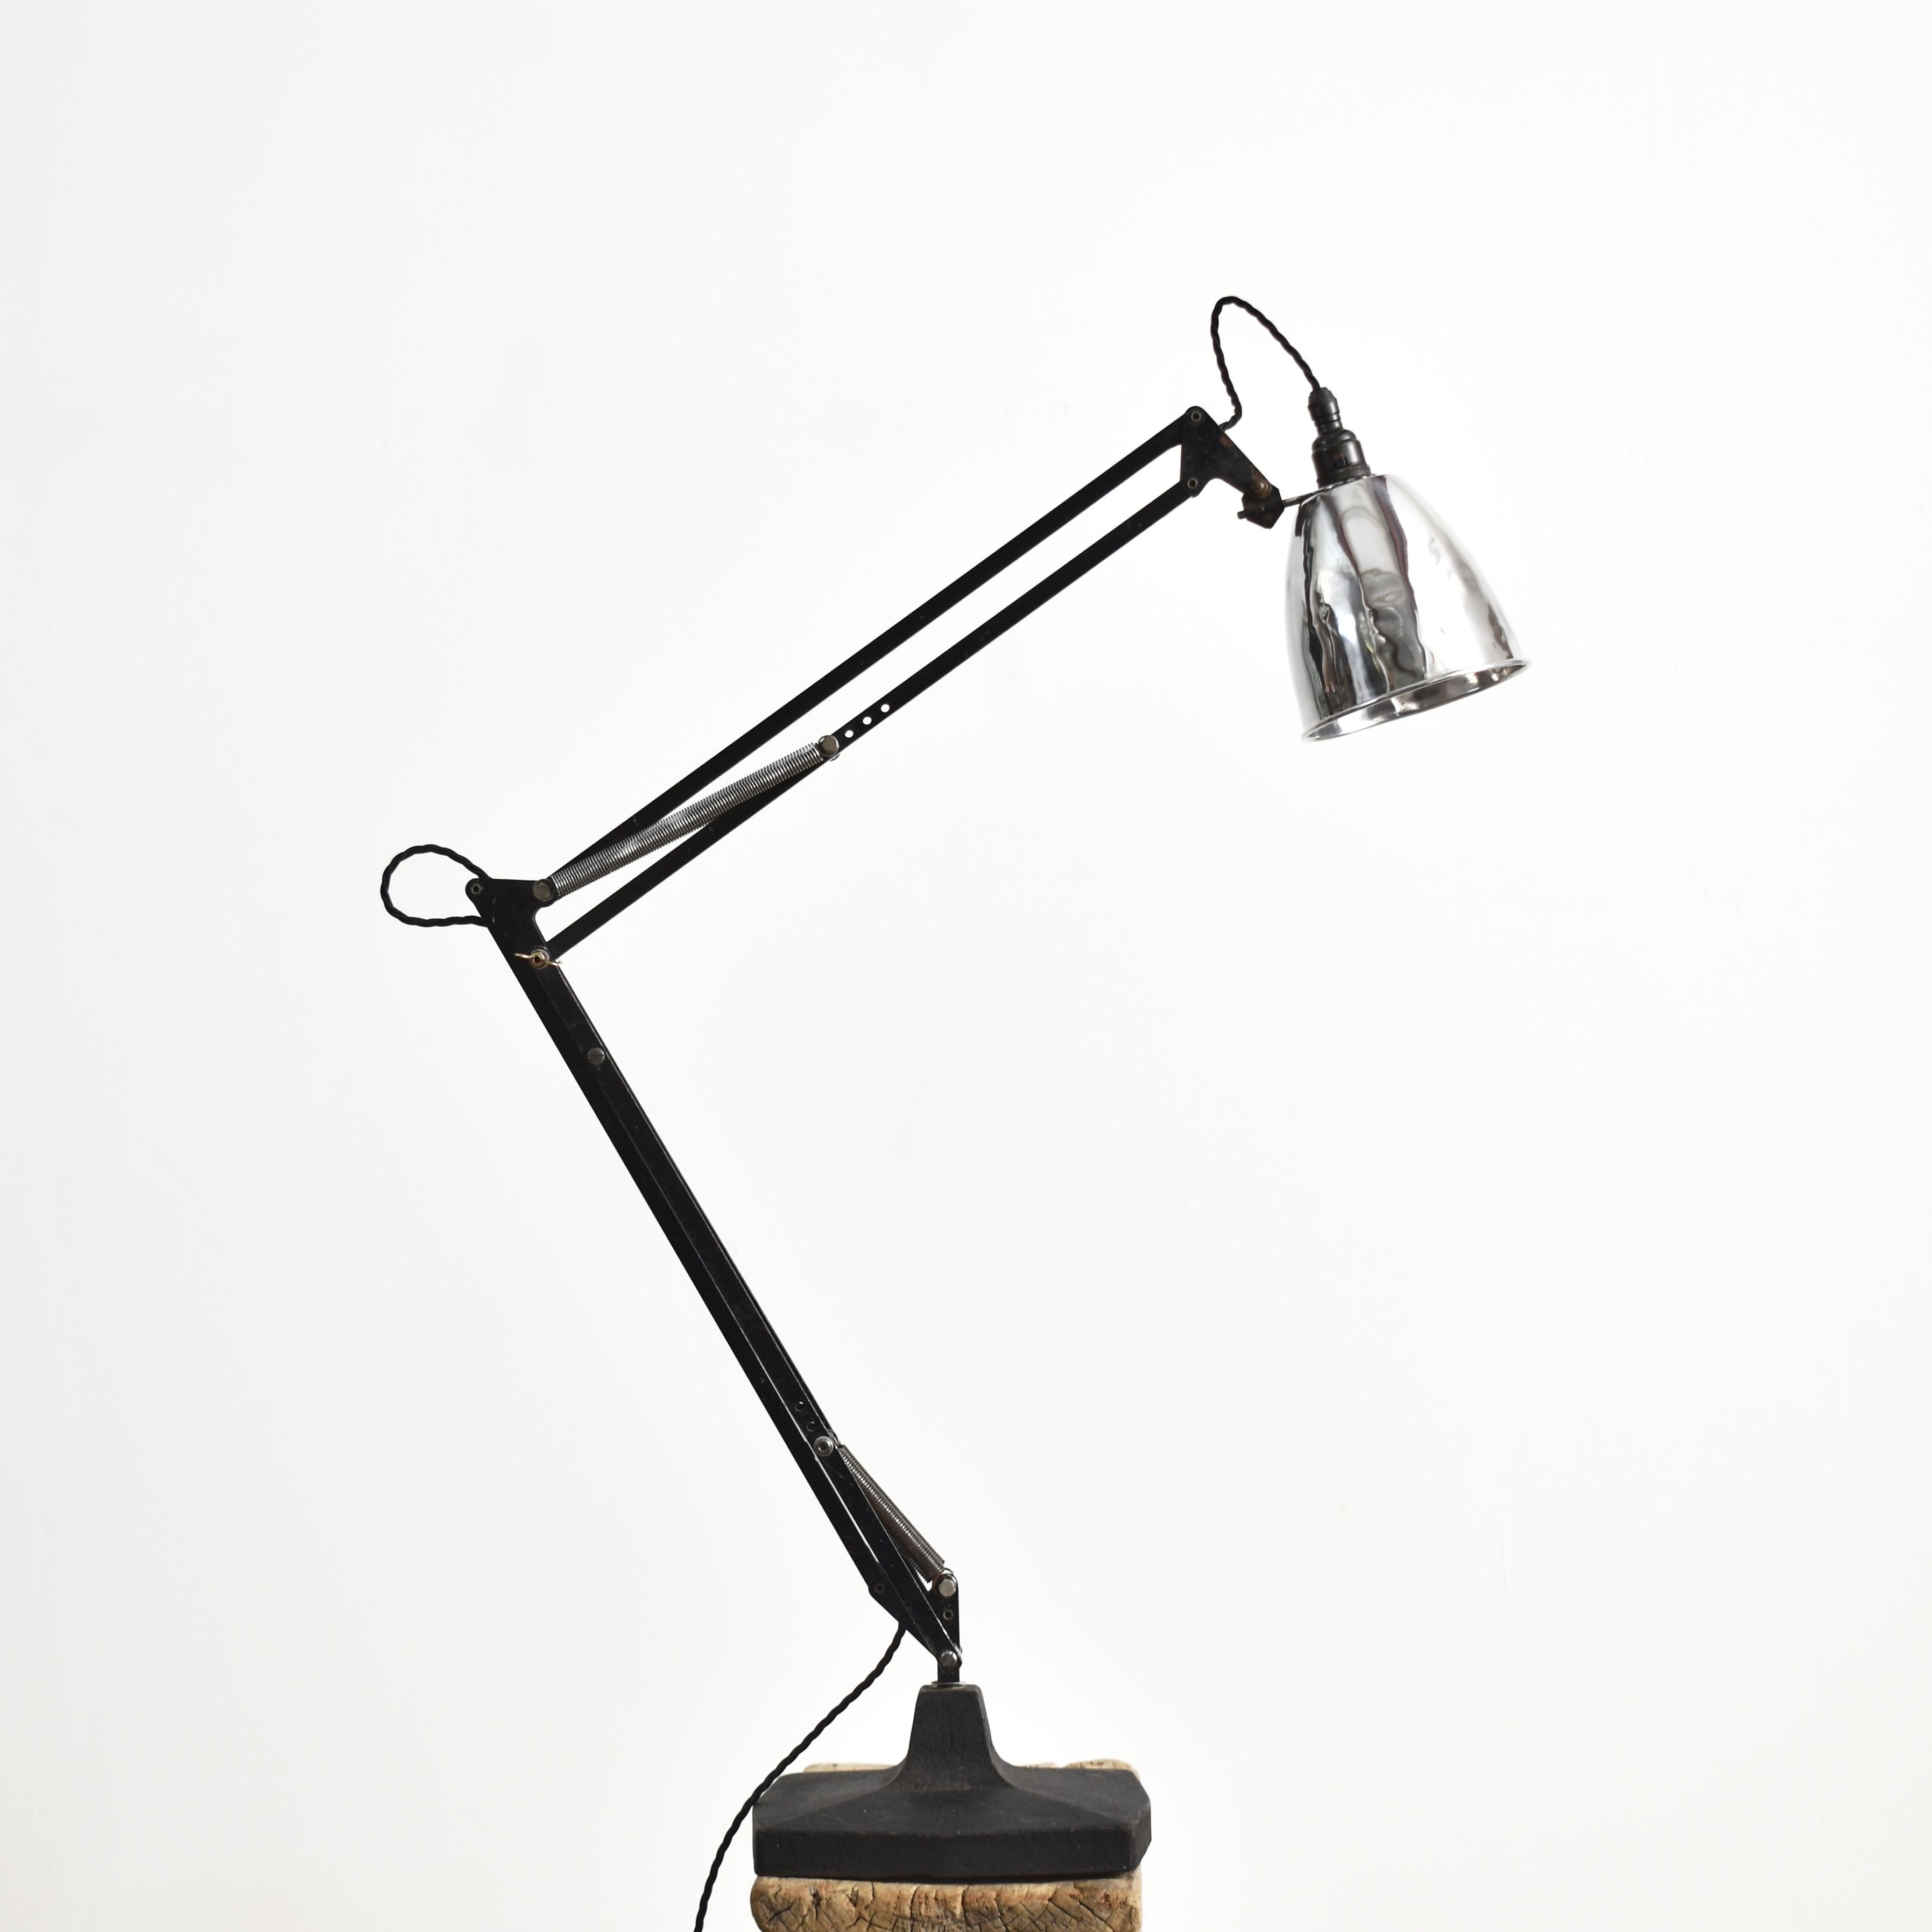 Original Anglepoise Schreibtischlampe 1209 Modell von Herbert Terry & Sons - A

Ein Original Anglepoise Lampe von Herbert Terry und Söhne, Modell 1209, ein Design-Klassiker Schreibtischlampe mit einem gegossenen Metall verbeugte Kante quadratische